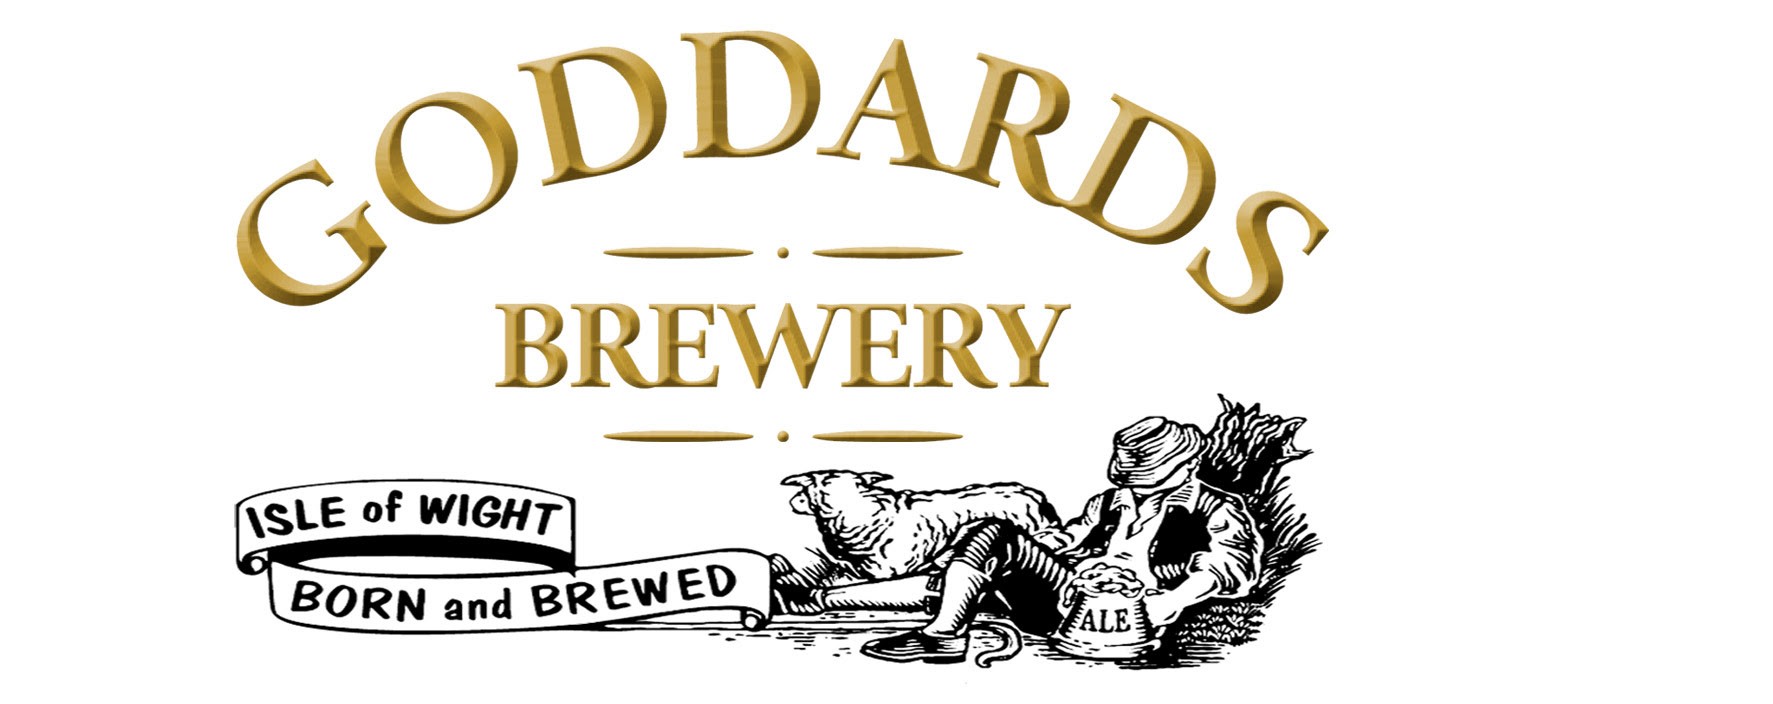 Goddards Brewery